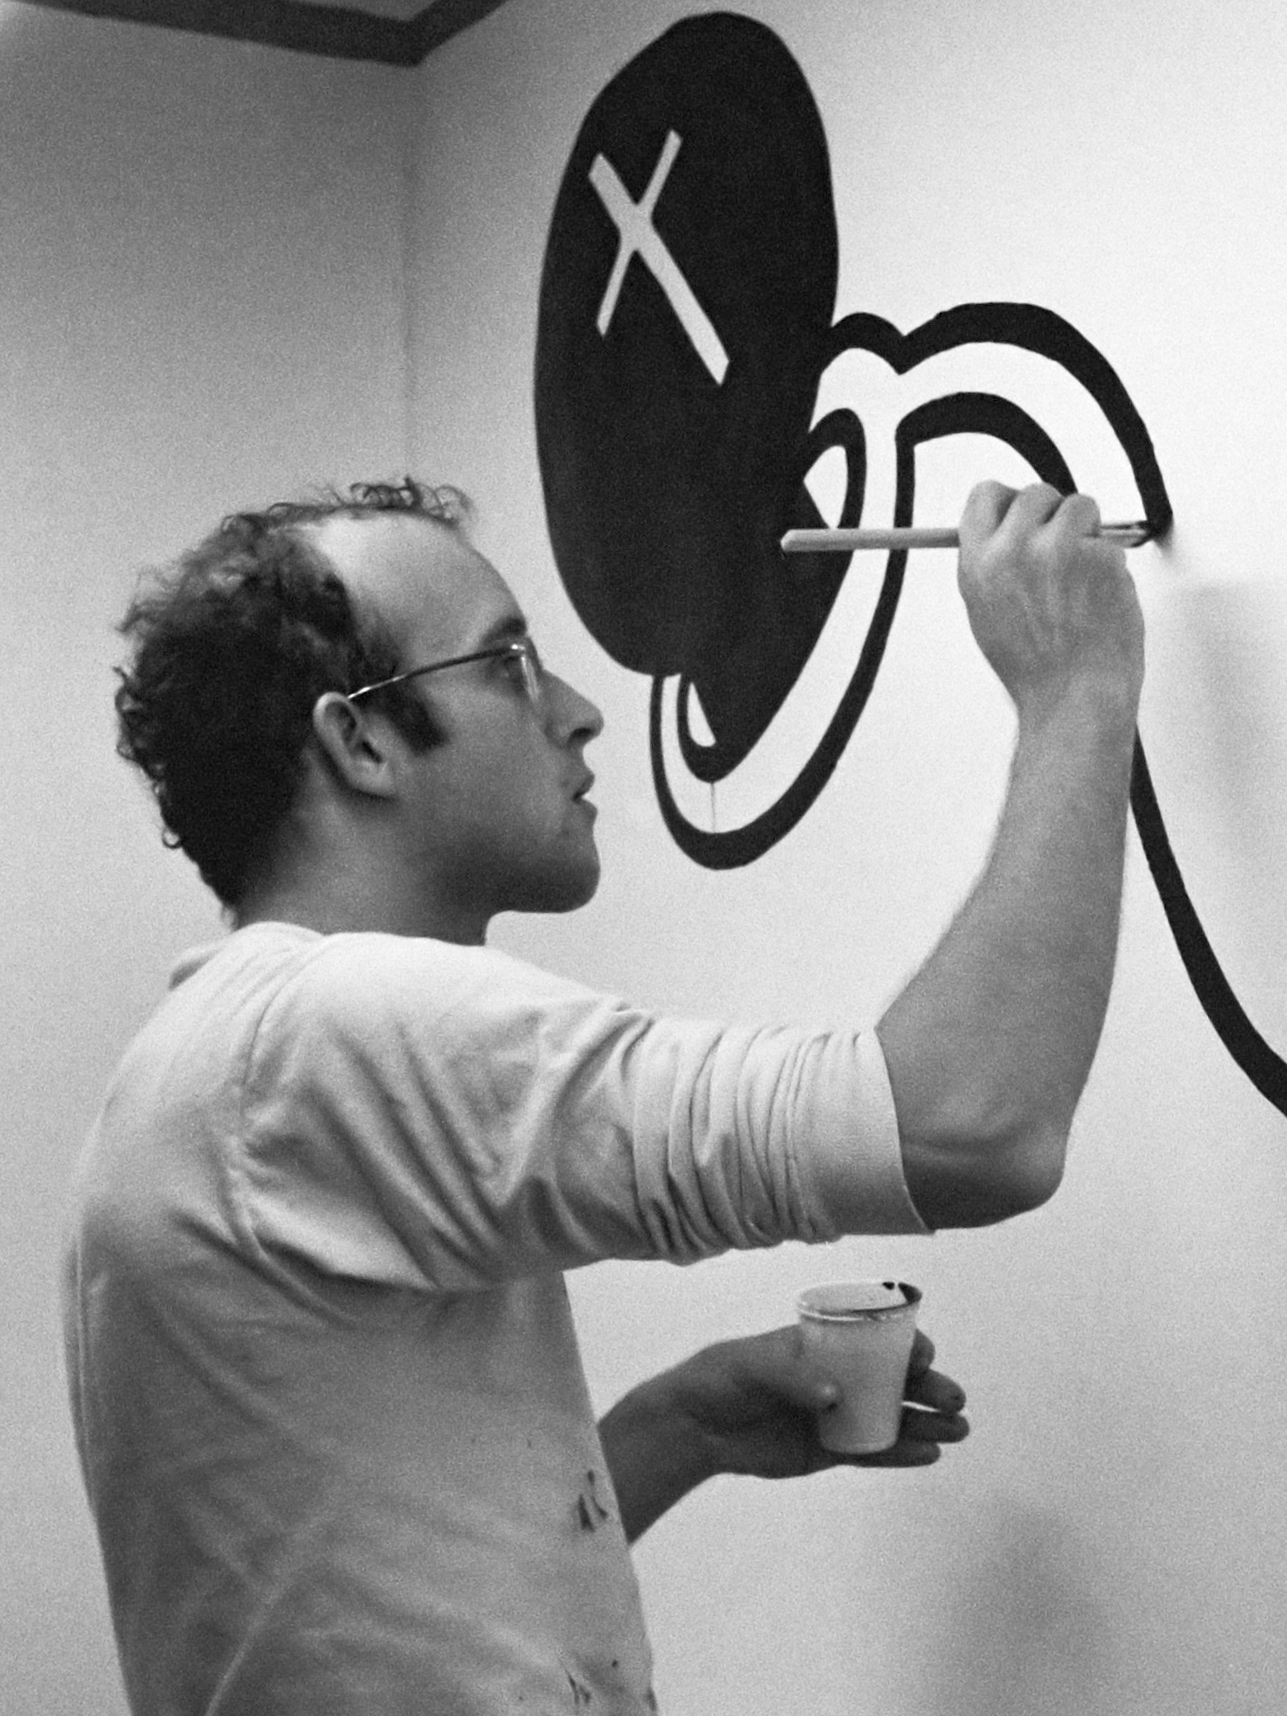 auteur Keith Haring de la citation Je ne pense pas que l'art soit la propagande; Ce devrait être quelque chose qui libère l'âme, provoque l'imagination et encourage les gens à aller plus loin. Il célèbre l'humanité au lieu de le manipuler.